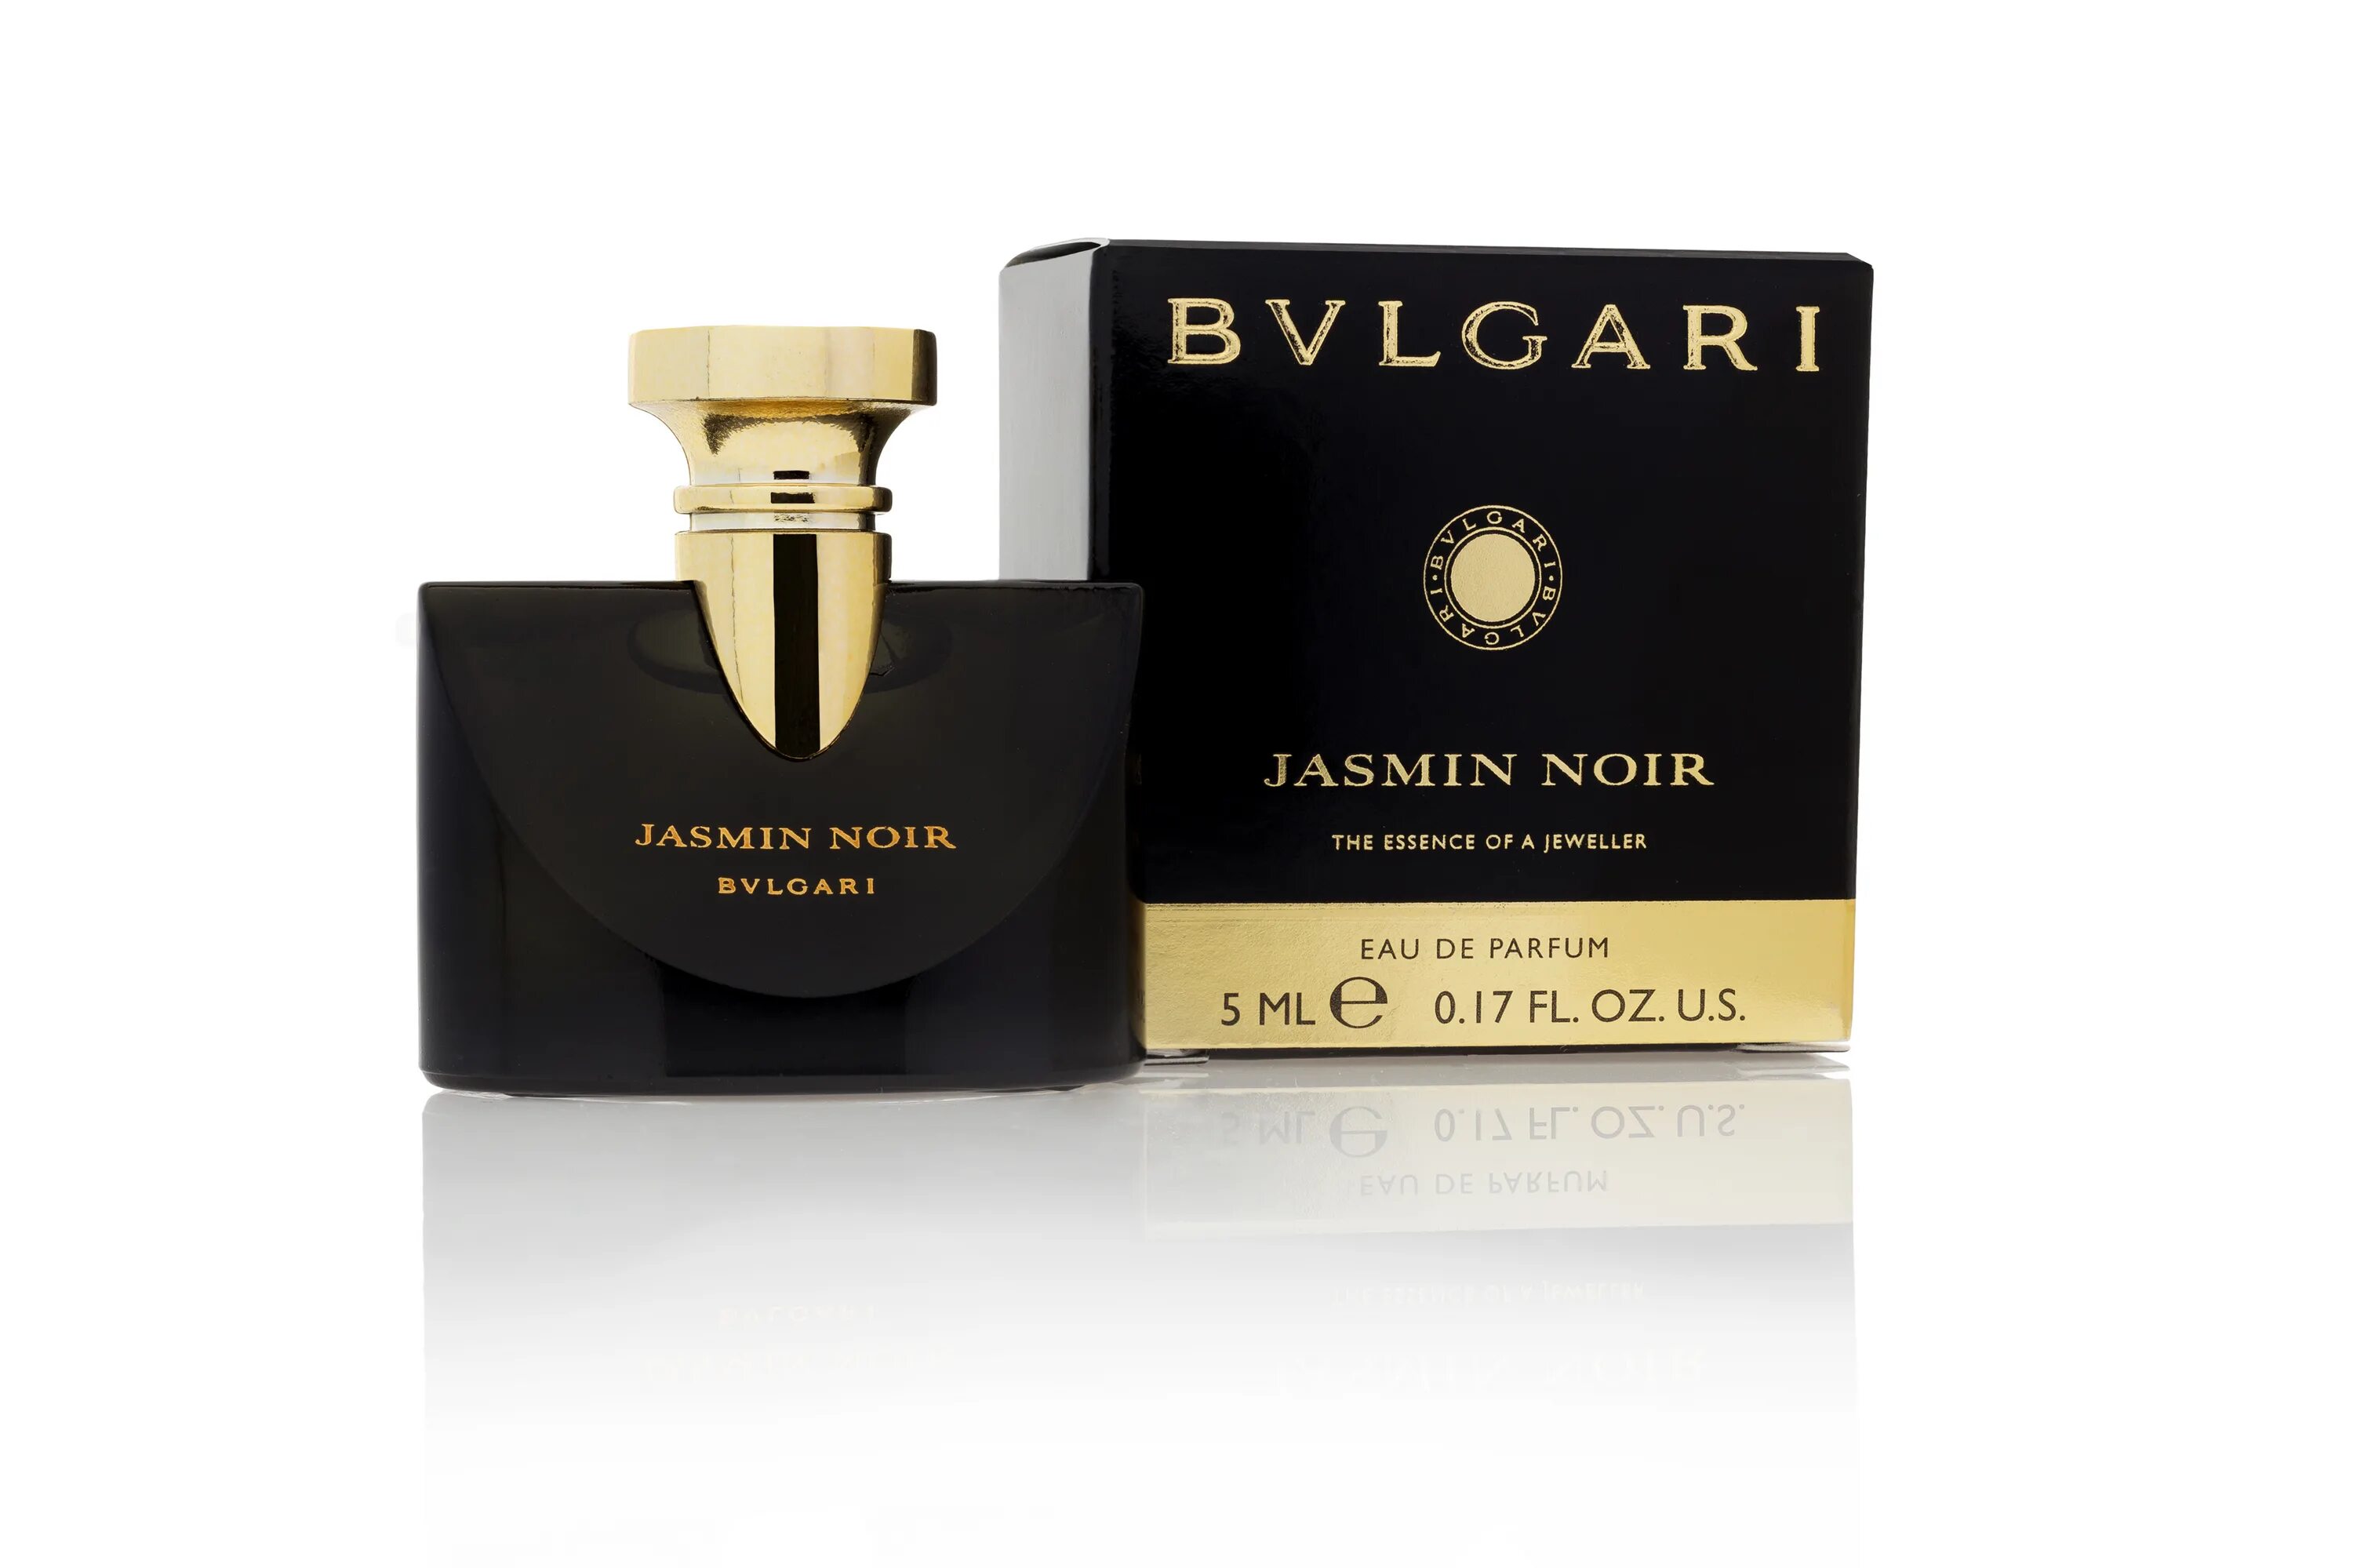 Bvlgari jasmin Noir 5 ml. Jasmin Noir EDT 30ml. Bvlgari jasmin noire. Bvlgari jasmin Noir EDP.